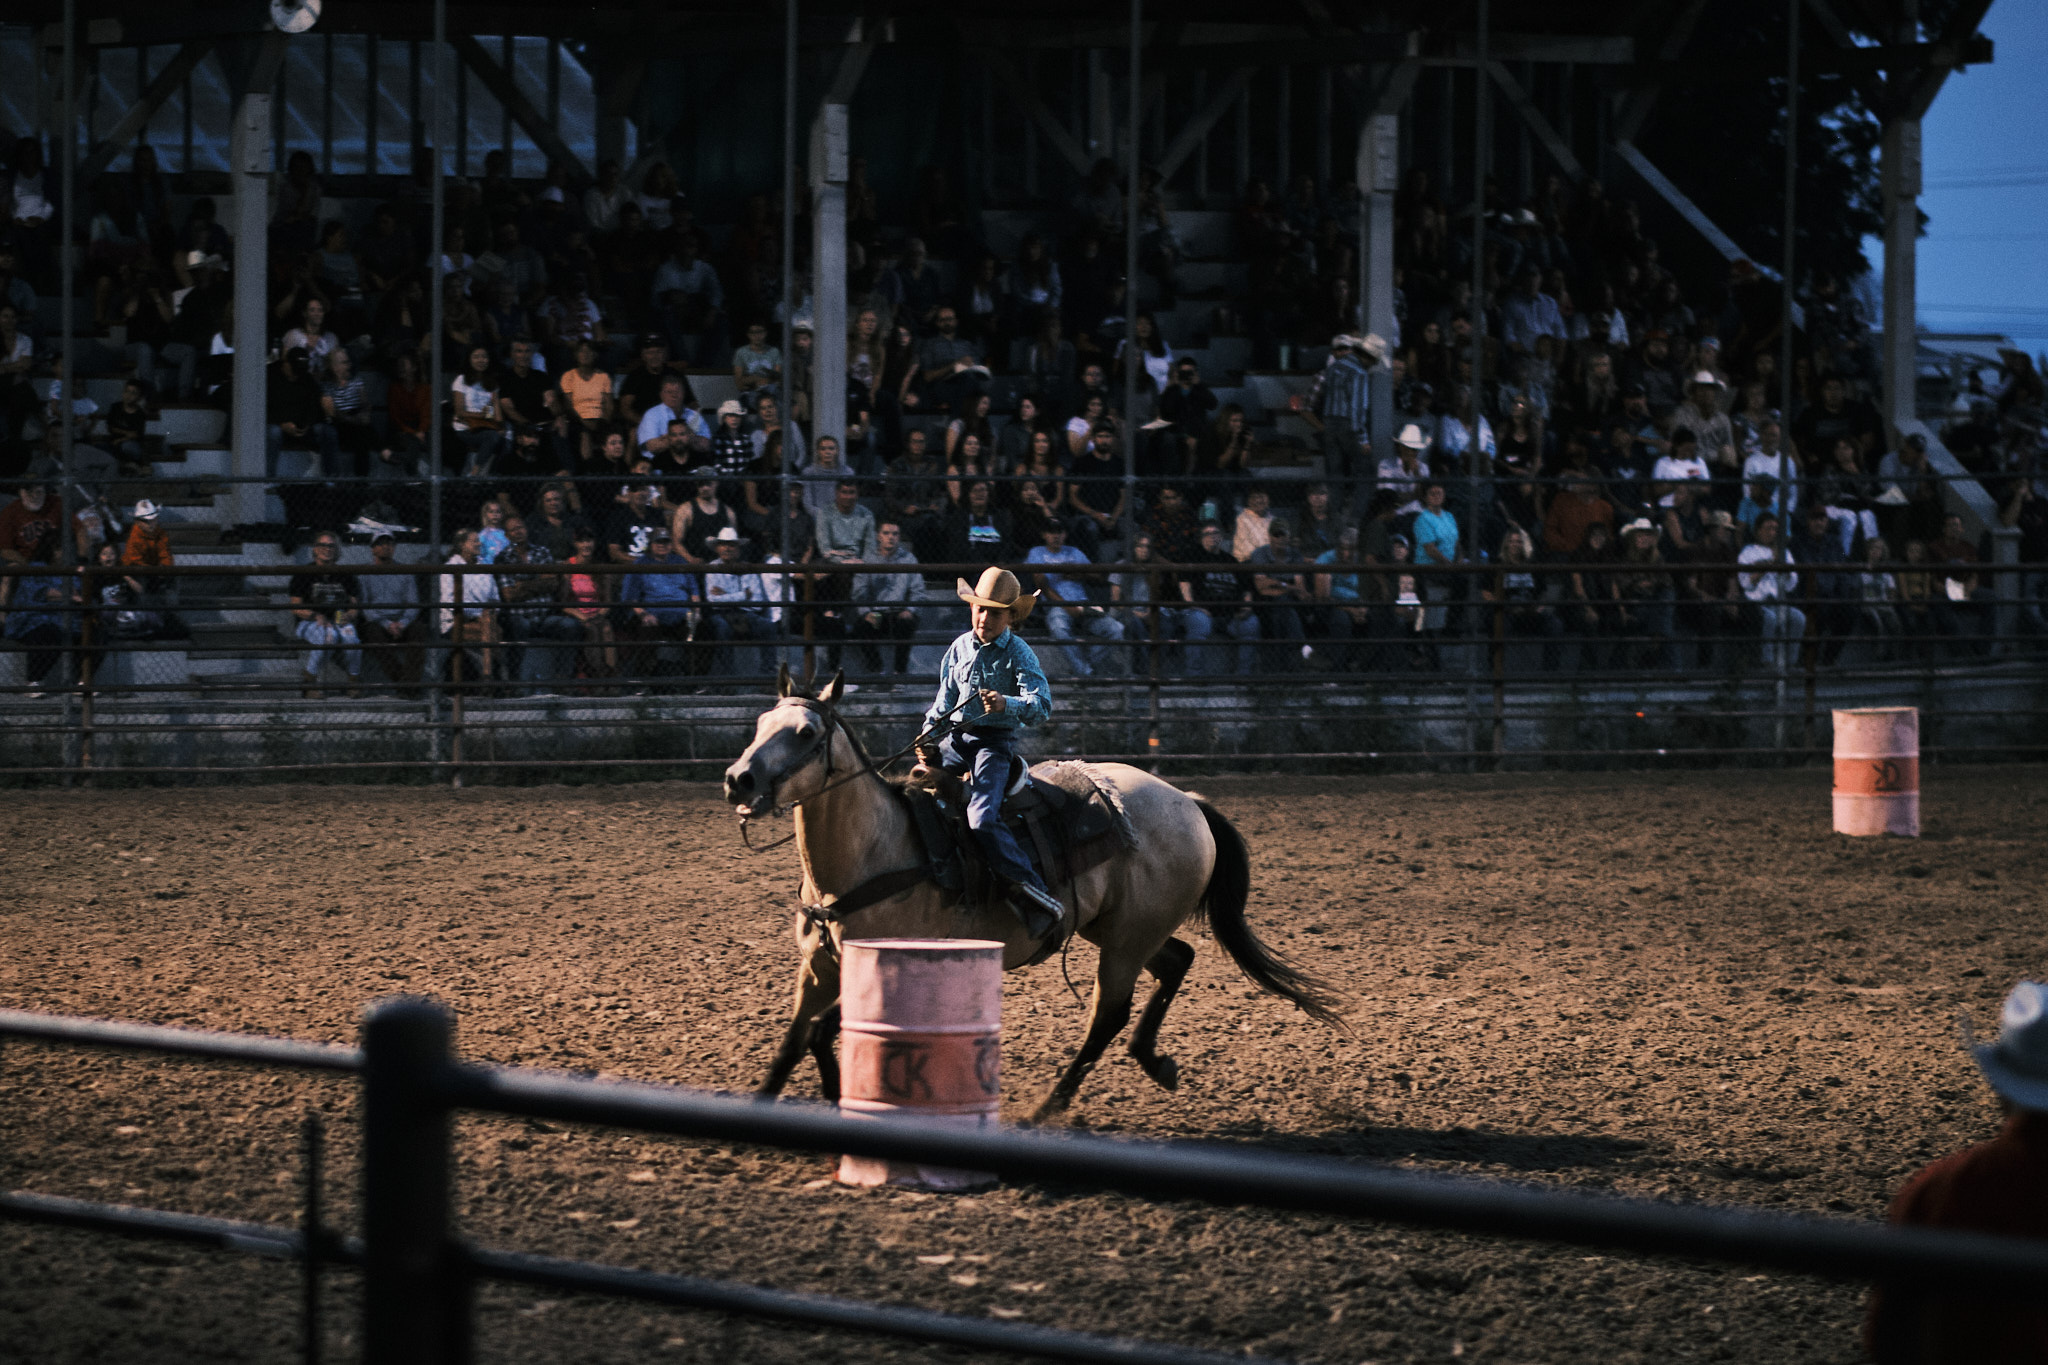 A young cowboy barrel racing his horse around a barrel